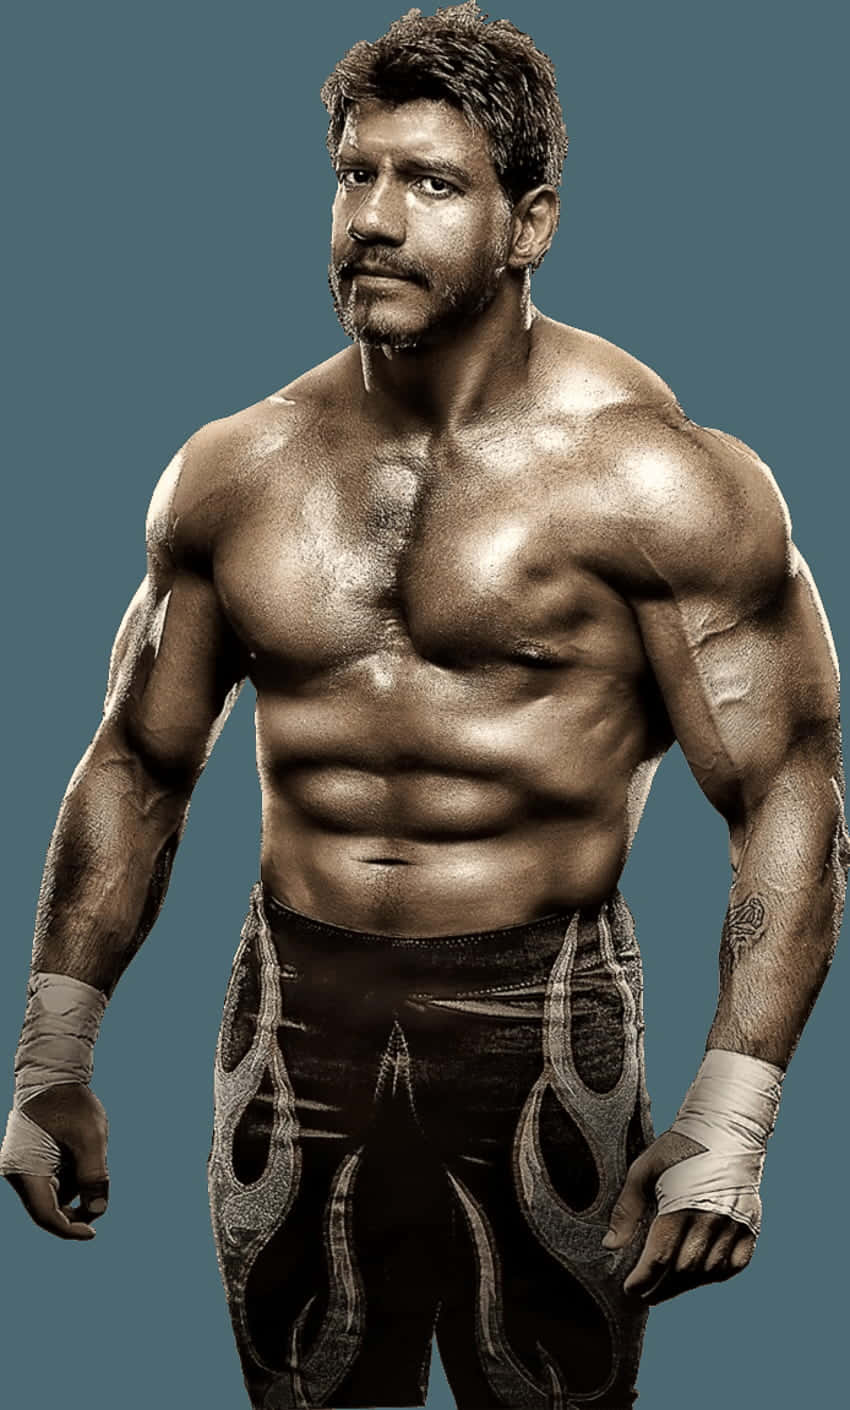 Eddie Guerrero WWE Wrestler Photo Tapet: Se et af de mest kendte ansigter i verdenen af wrestling - Eddie Guerrero. Wallpaper